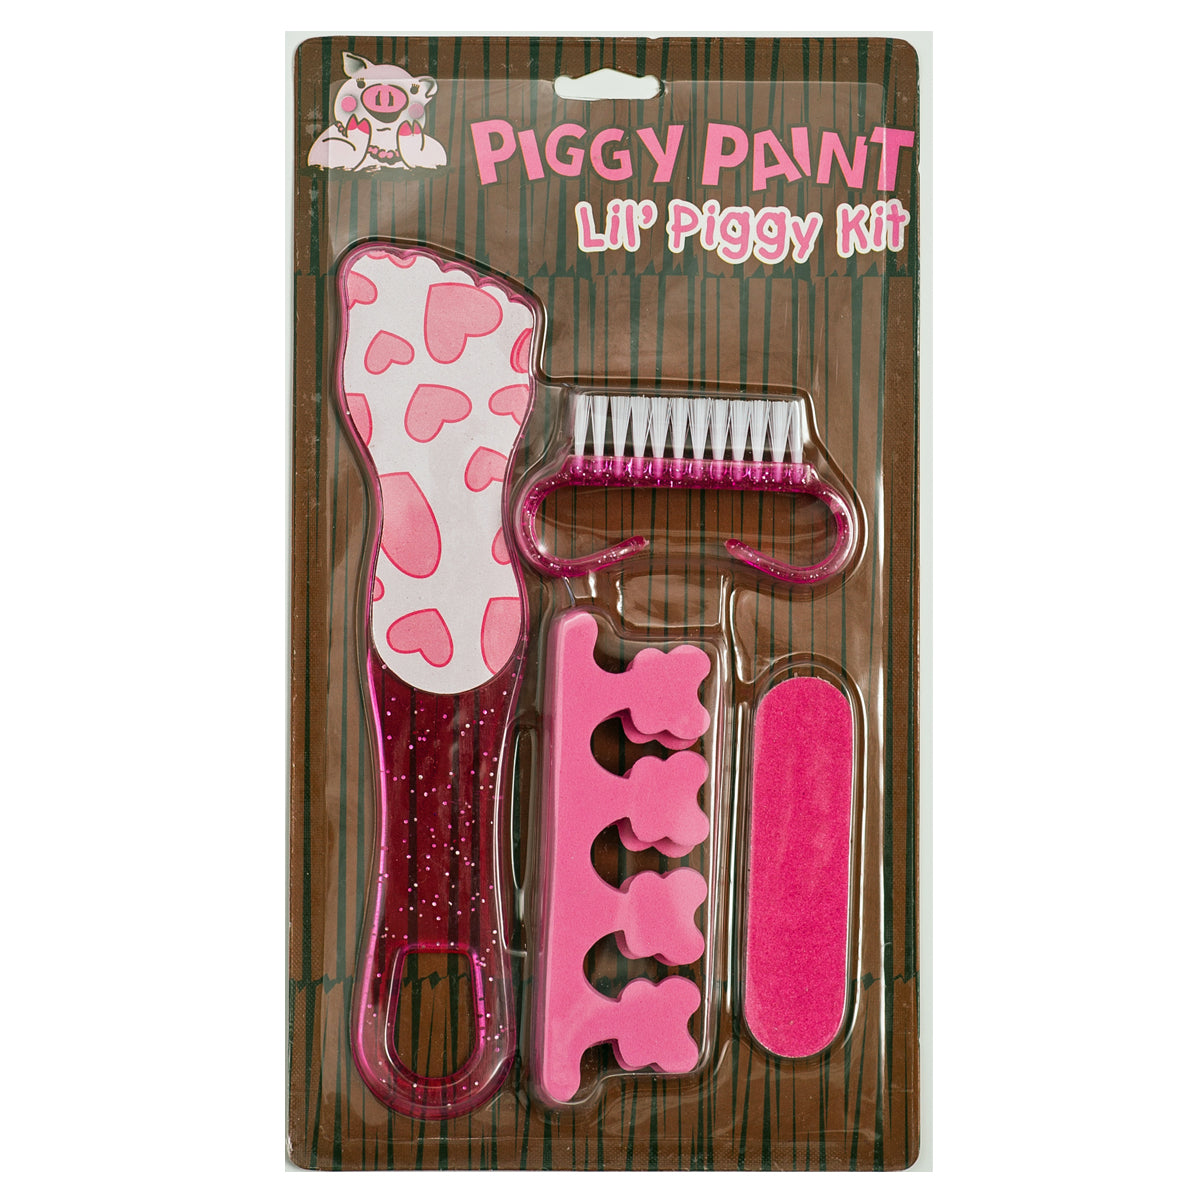 Lil' Piggy Kit: Pedicure Set - Ages 3+